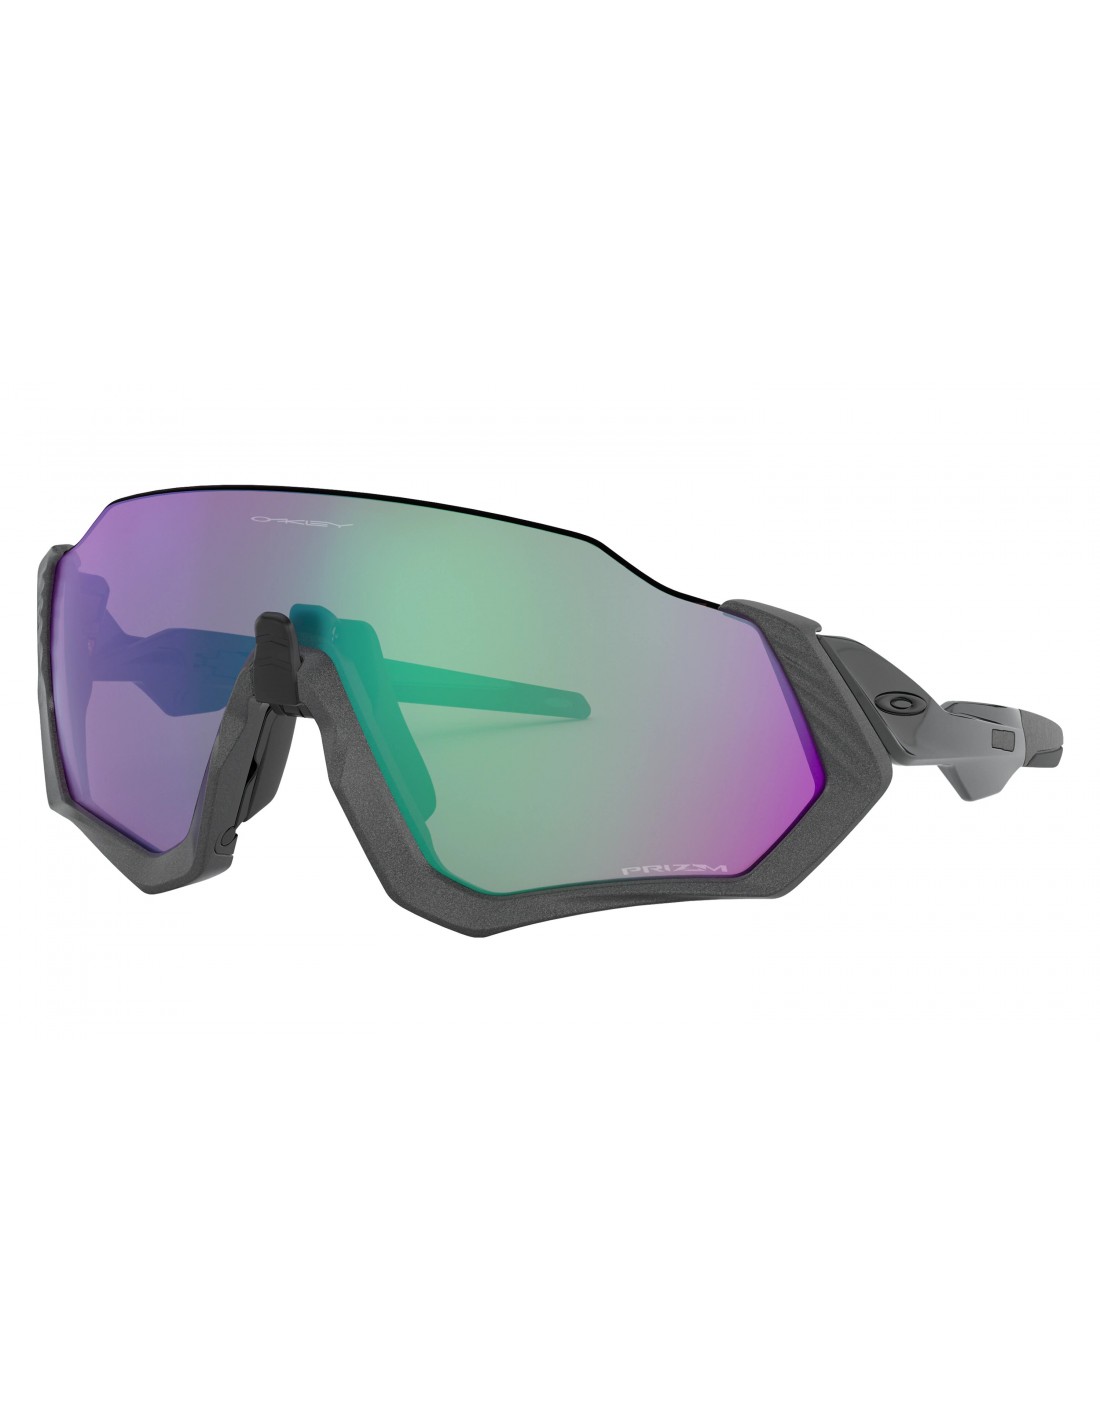 Oakley Sonnenbrille - Flight Jacket - Matte Steel - Prizm Road Jade Brillenfassung - Sportbrillen, von Oakley